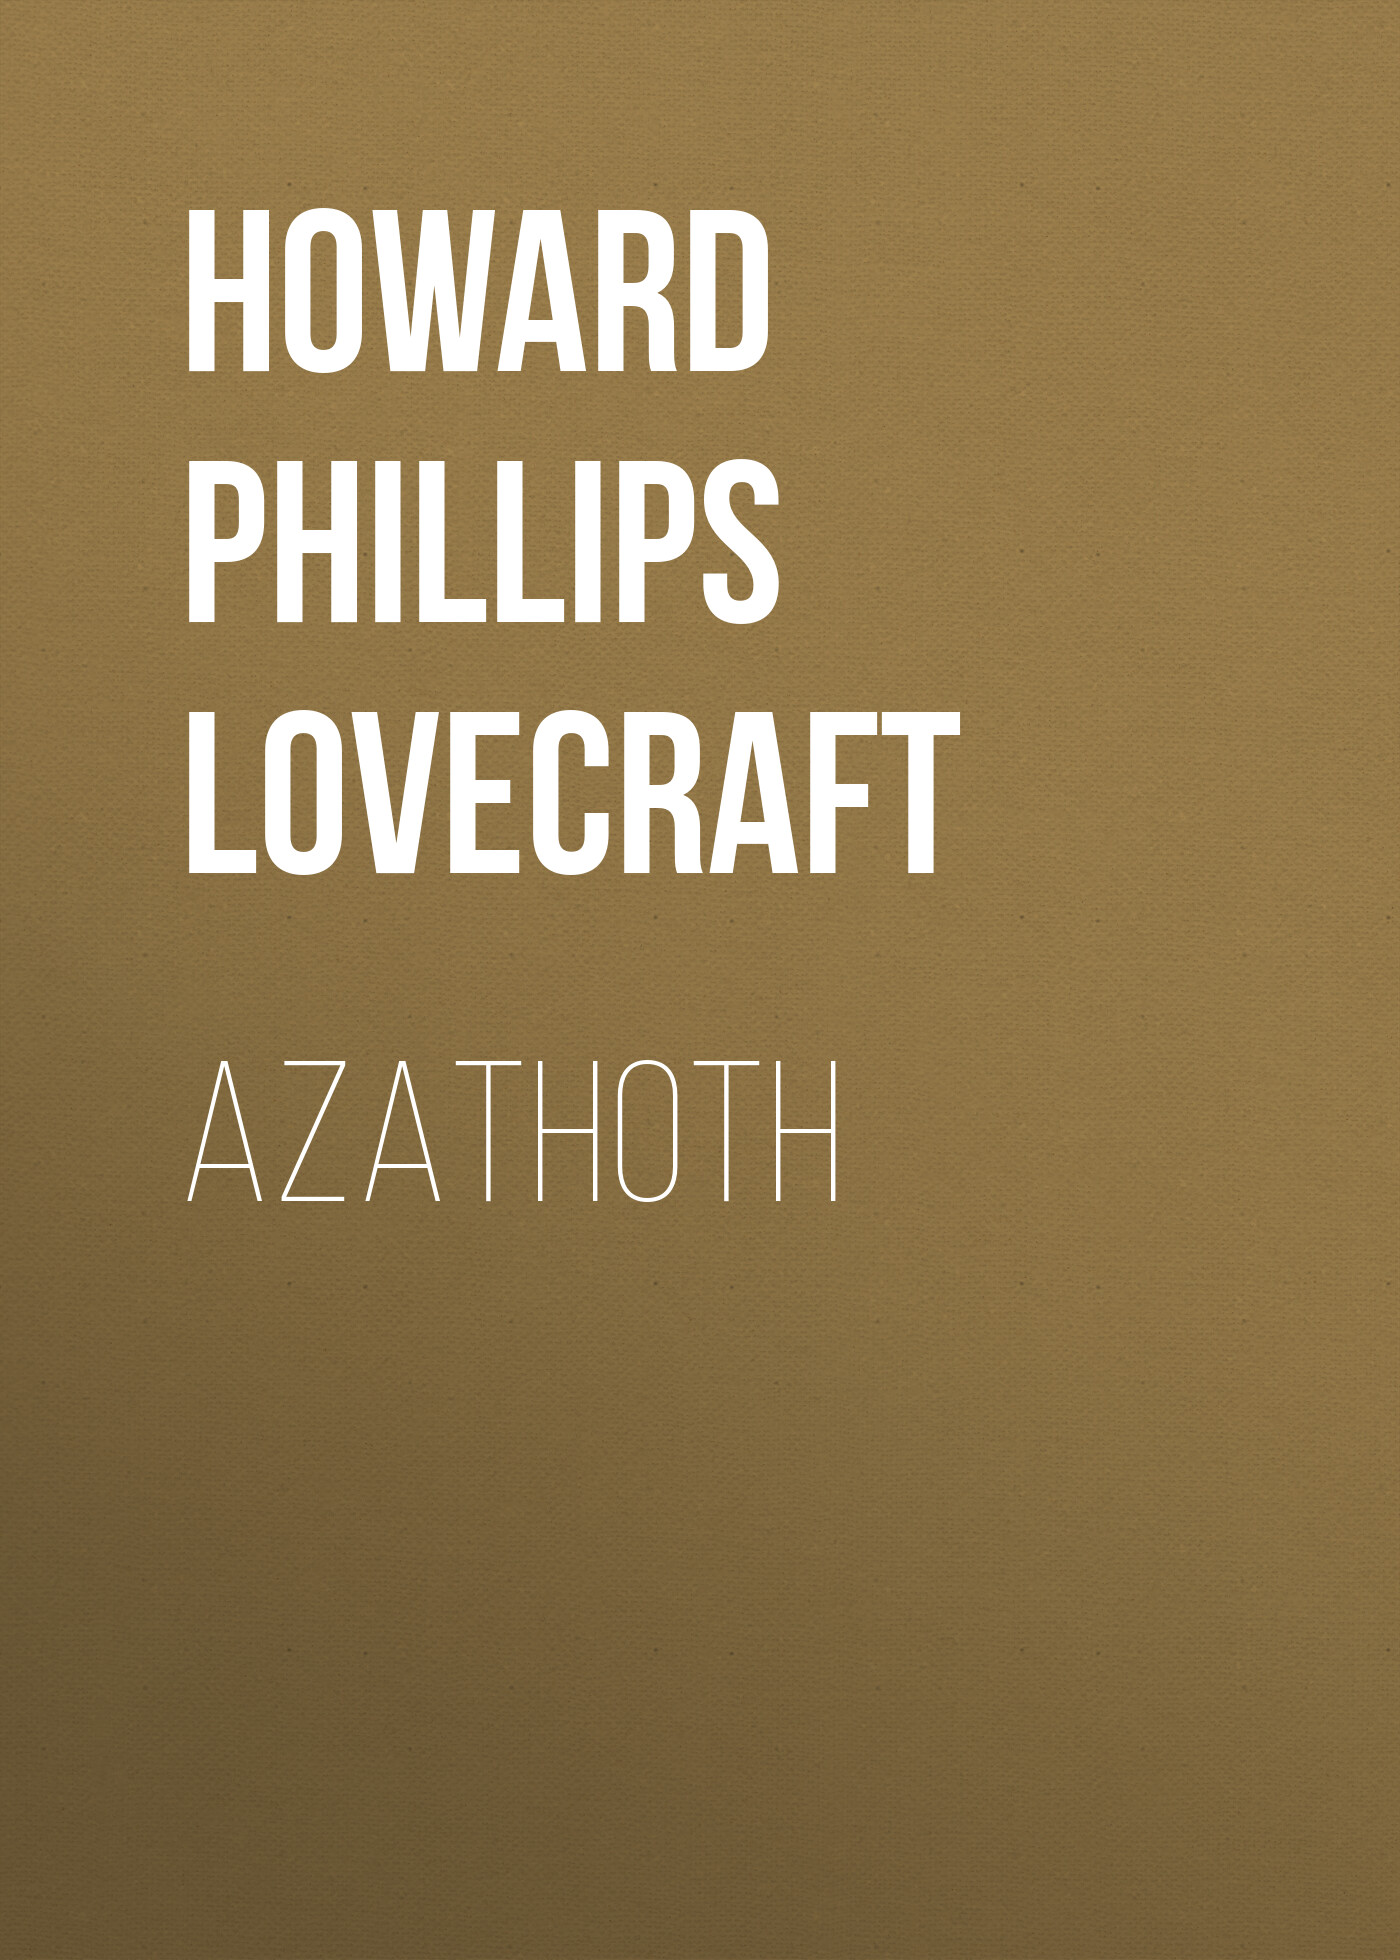 Книга Azathoth из серии , созданная H. Lovecraft, может относится к жанру Зарубежное: Прочее, Зарубежная классика, Ужасы и Мистика. Стоимость электронной книги Azathoth с идентификатором 8647318 составляет 5.99 руб.